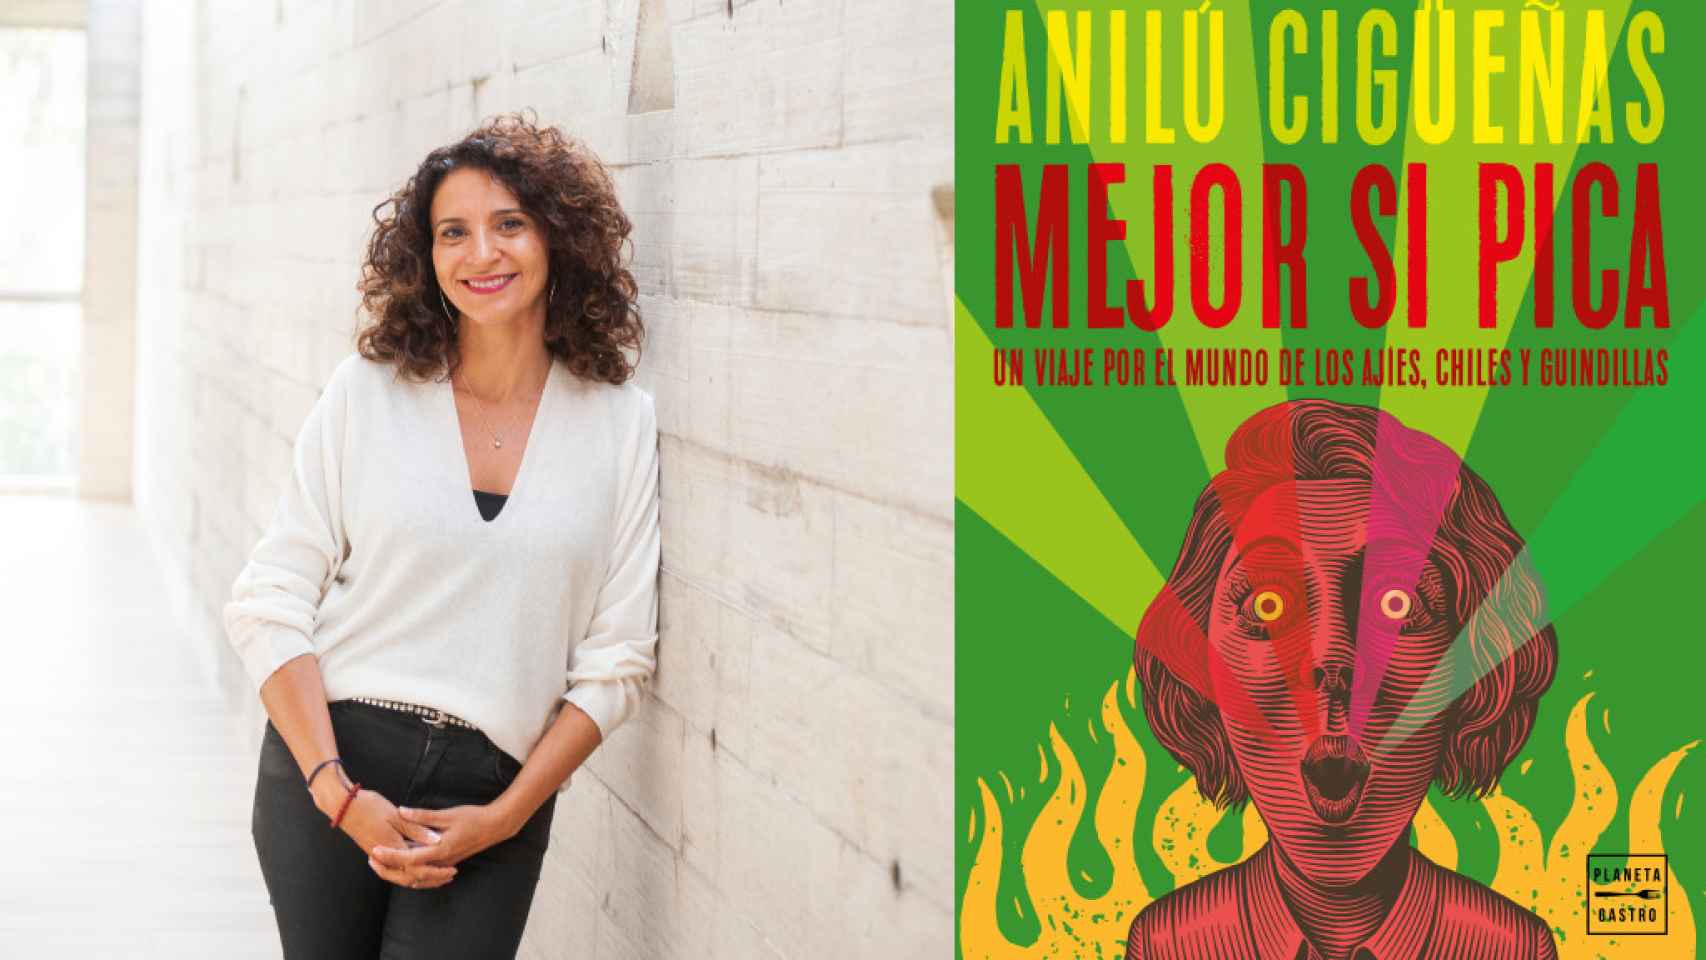 Anilú Cigüeñas y su libro 'Mejor si pica' (Planeta Gastro)